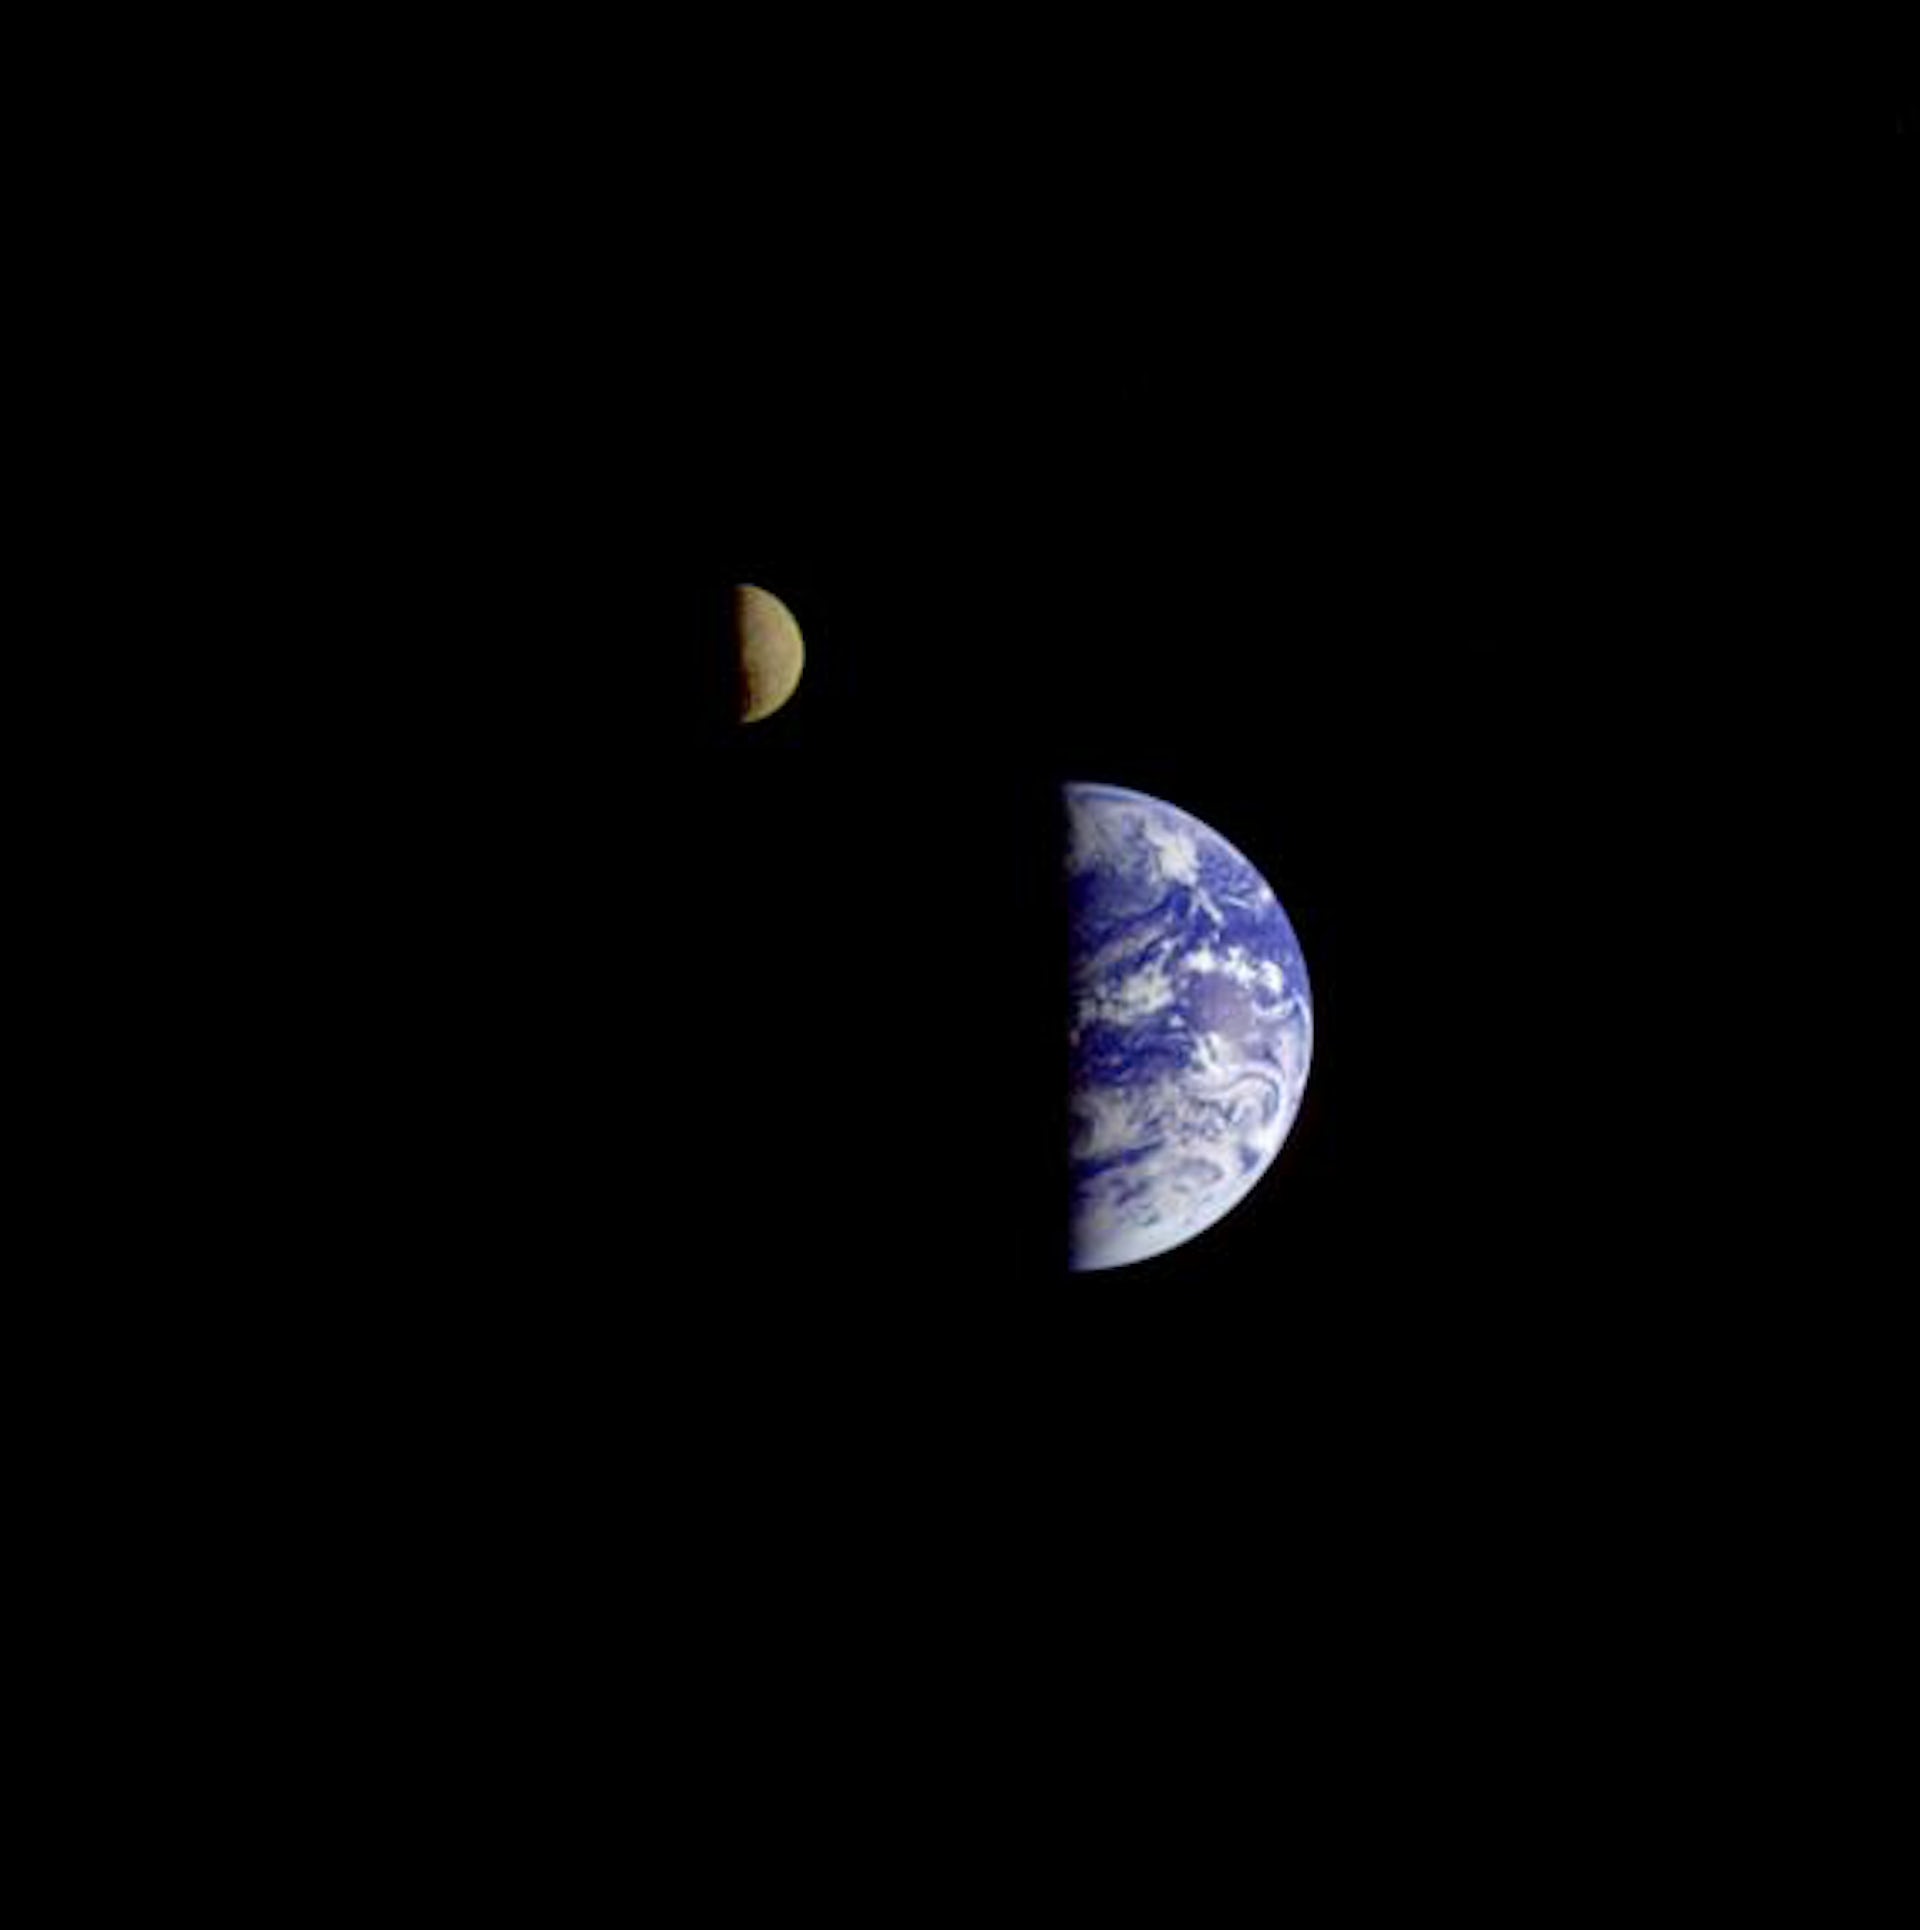 ガリレオ探査機が600万km離れた場所から見た地球と月【今日の宇宙画像】